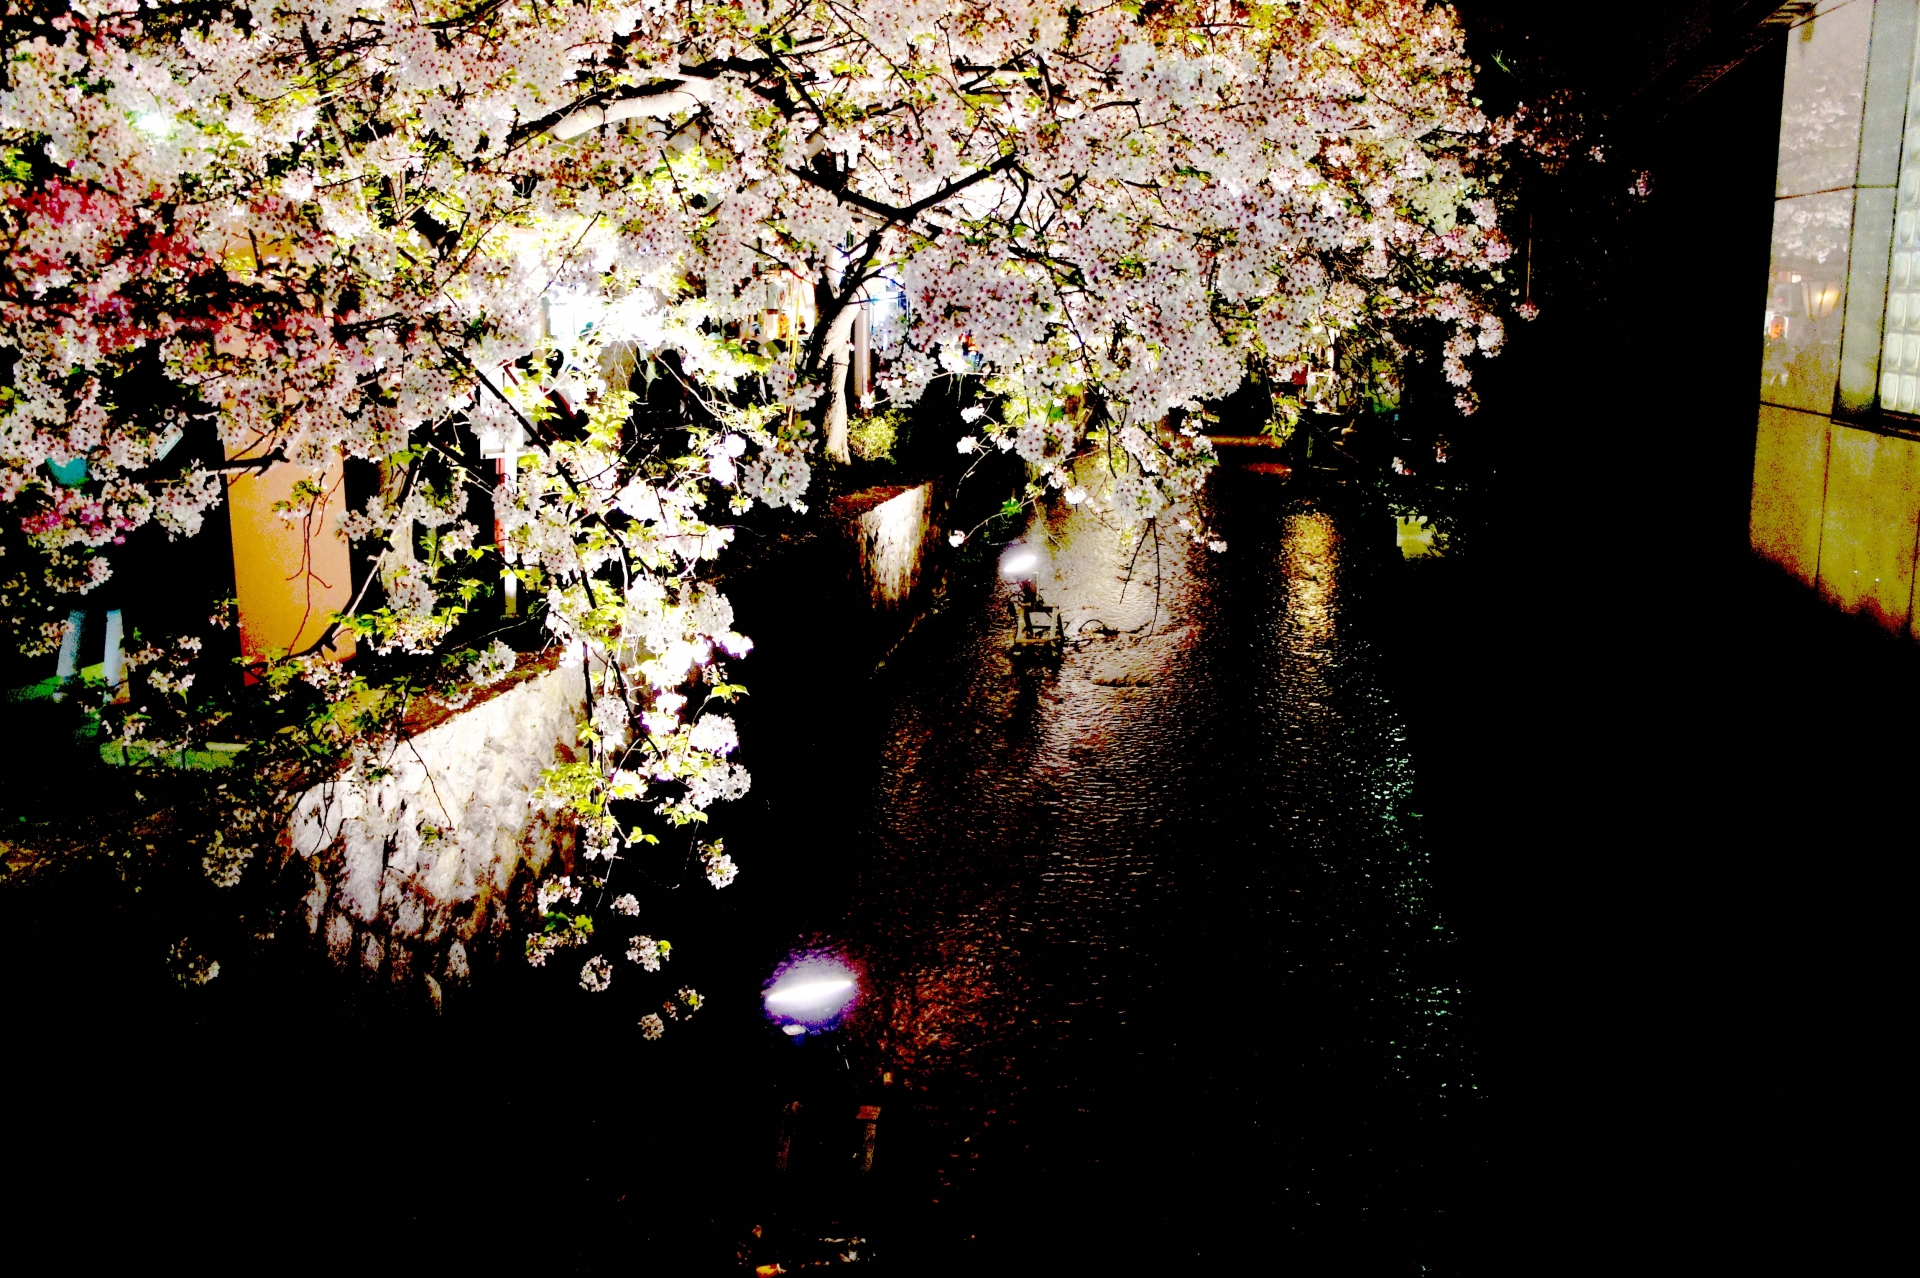 京都4 7 金 フォトさんぽ 夜桜撮影会 サクラの季節は写真の季節 カメラを持って 京都天狼院 近くの 祇園の夜桜 を撮りに行こう 撮った写真をフルhdモニターに映して鑑賞会もできる 初参加大歓迎 天狼院書店